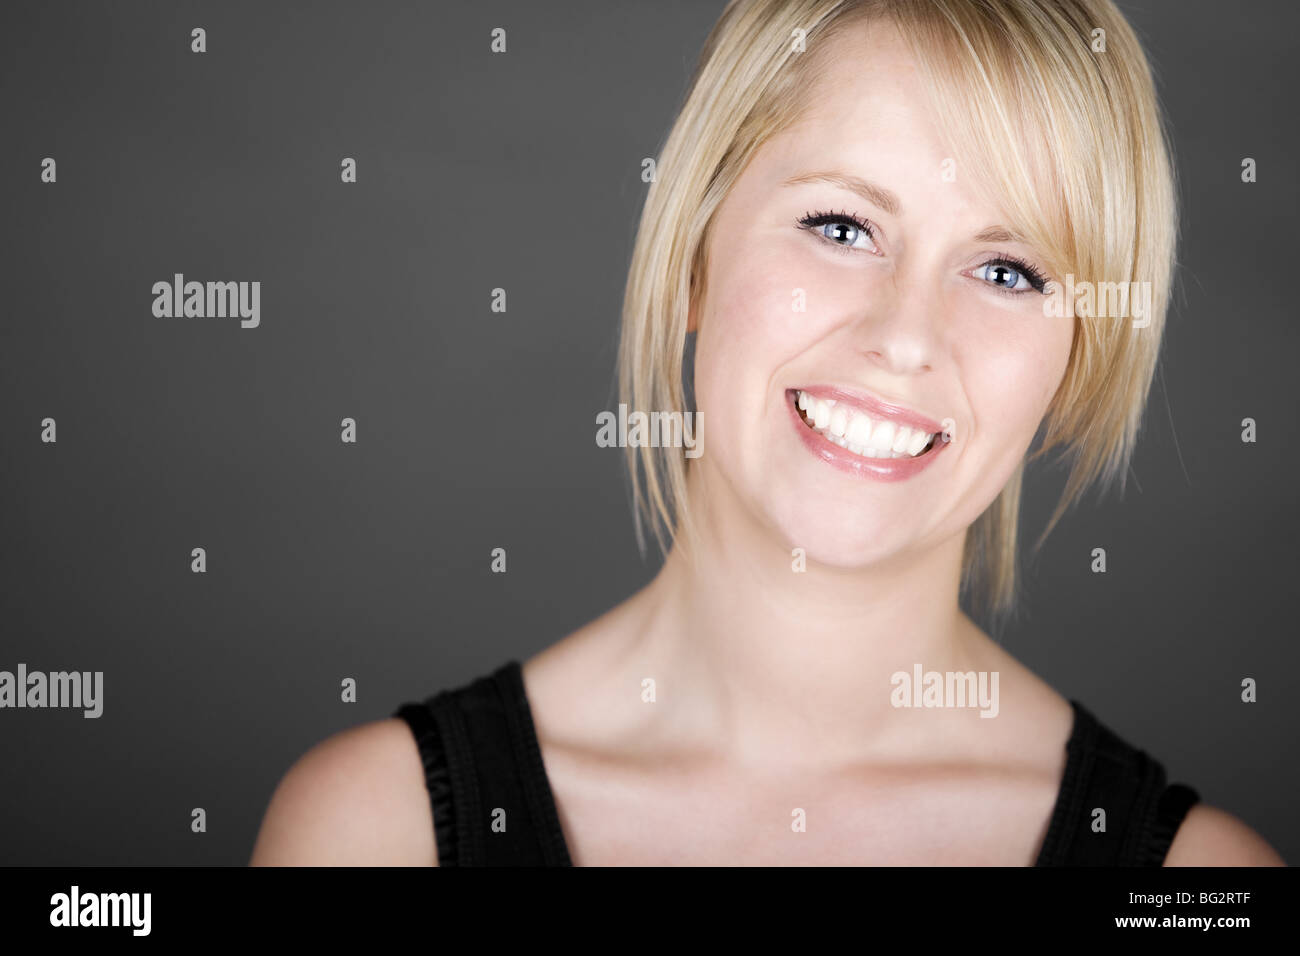 Schuss von einem schönen Lächeln auf den Lippen Blonde Mädchen vor grauem Hintergrund Stockfoto